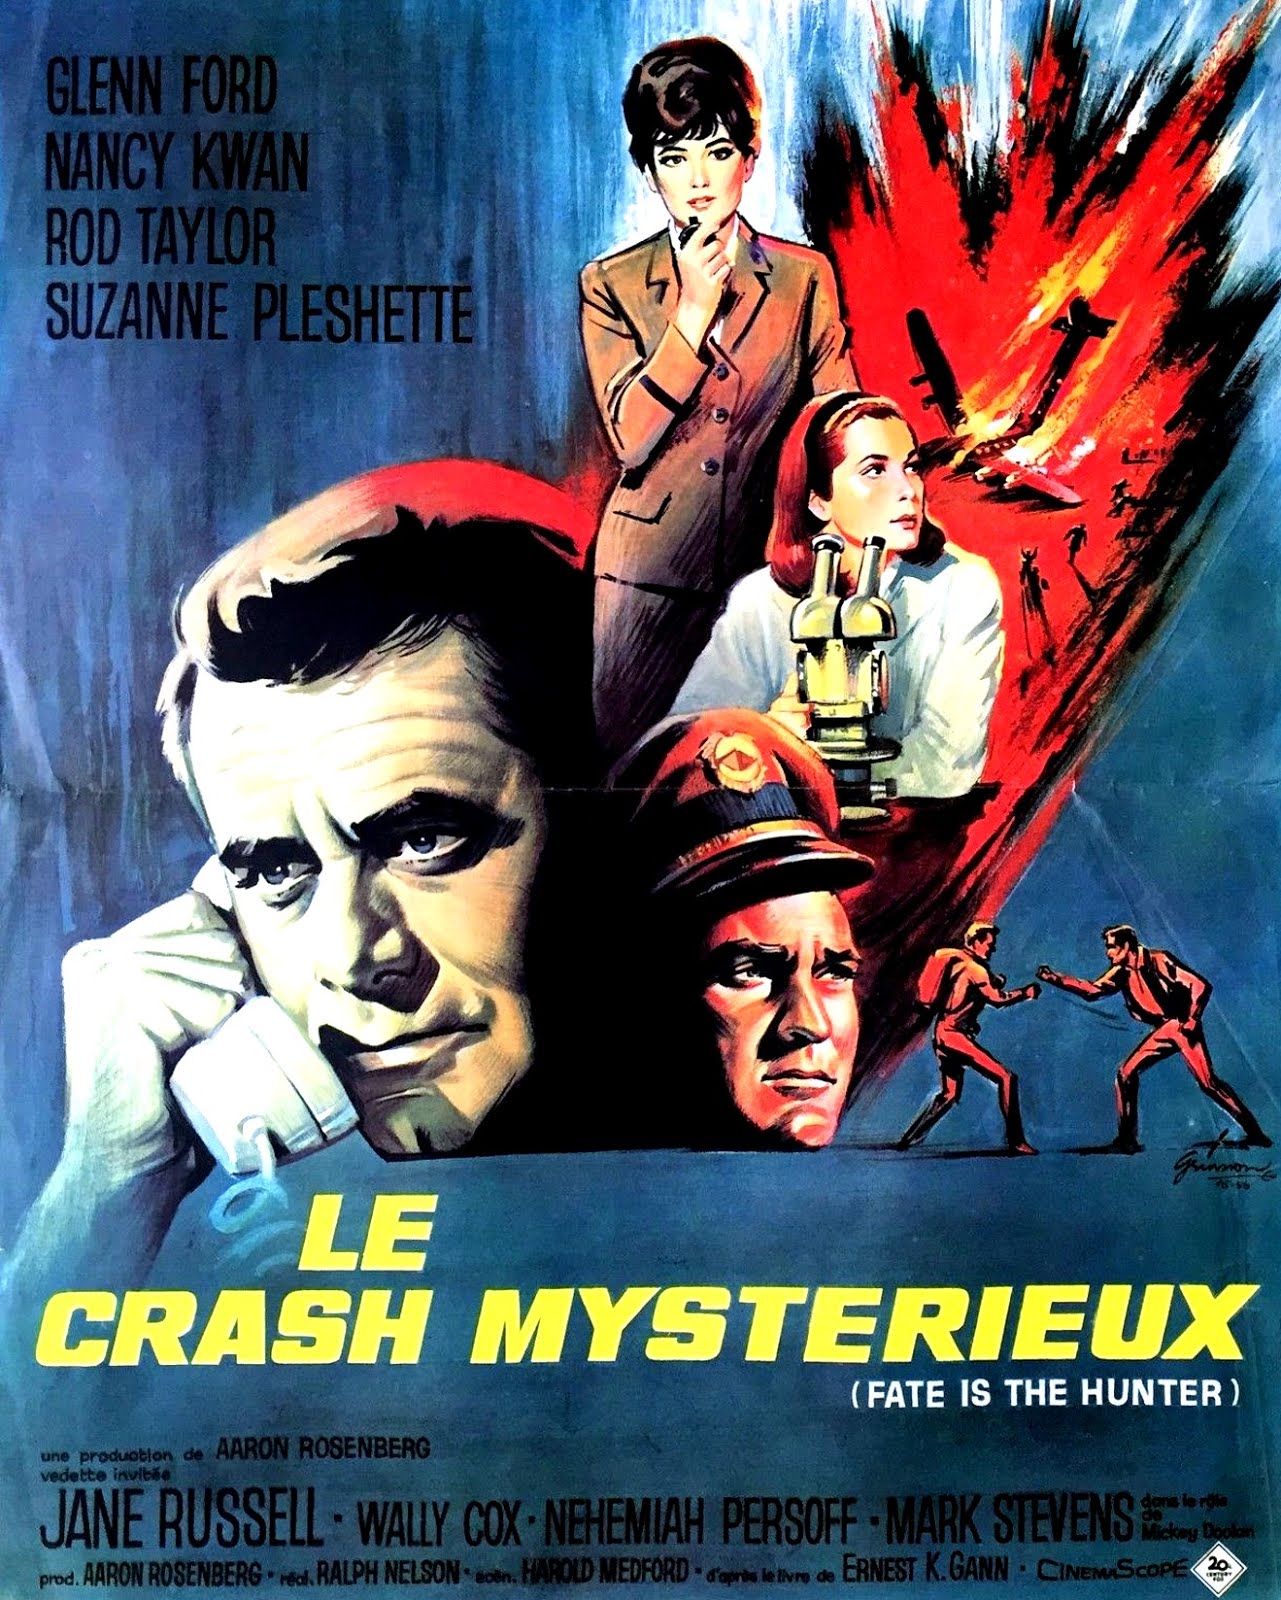 Le crash mystérieux (1964) Ralph Nelson - Fate is the hunter (05.01.1964 / 1964)